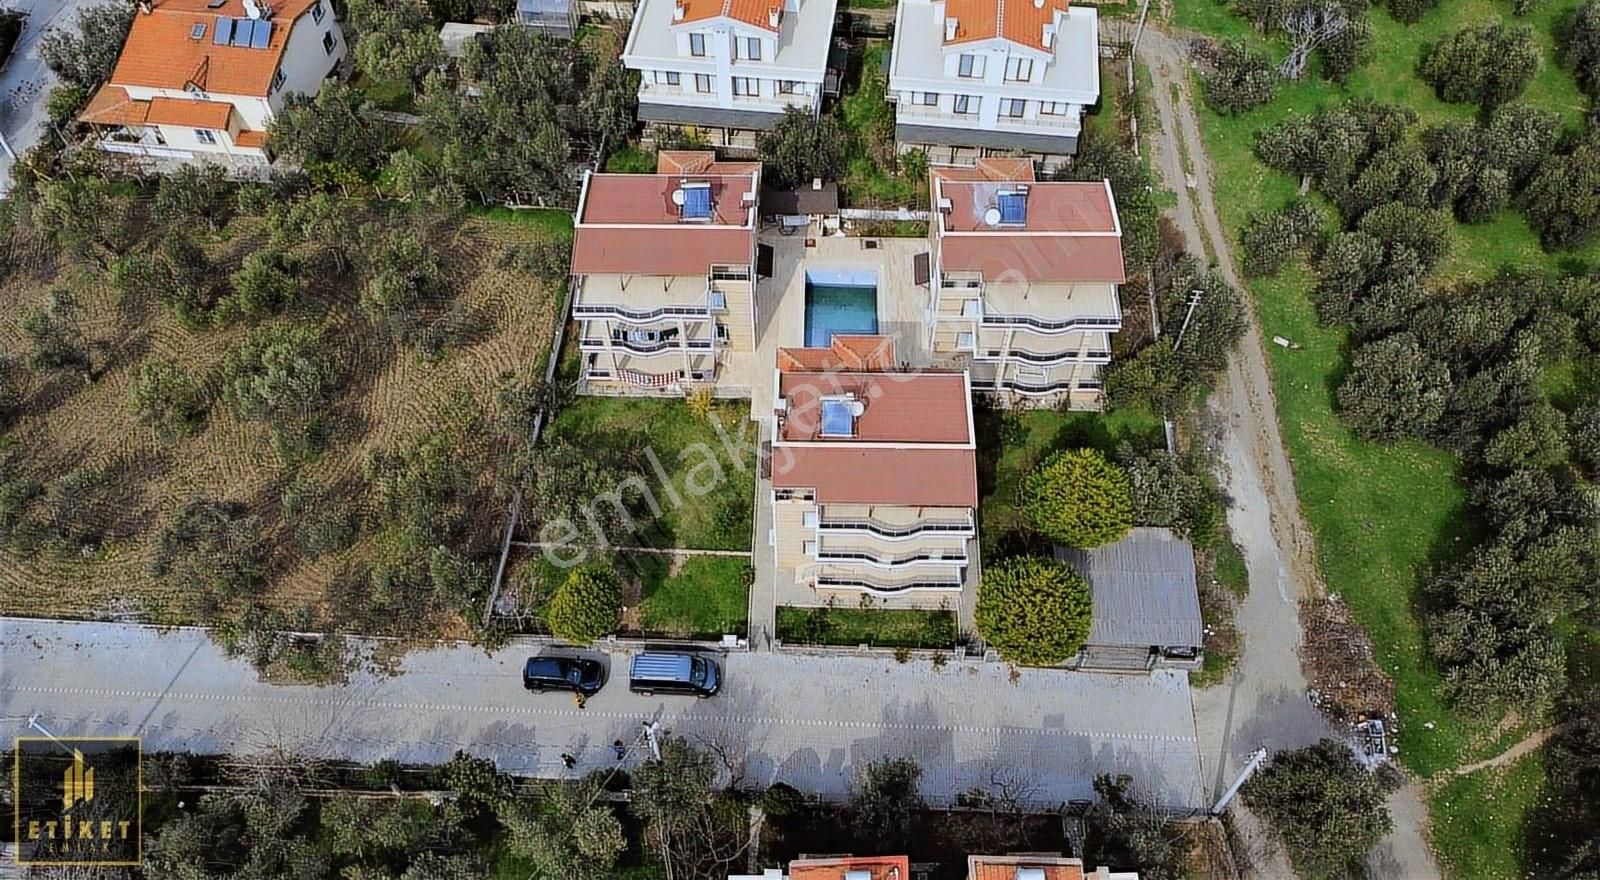 Ayvacık Küçükkuyu Bld. (Mıhlı) Satılık Villa ETİKET'TE 1.344M² İÇERİSİNDE 3 ADET MÜSTAKİL HAVUZLU VİLLALAR